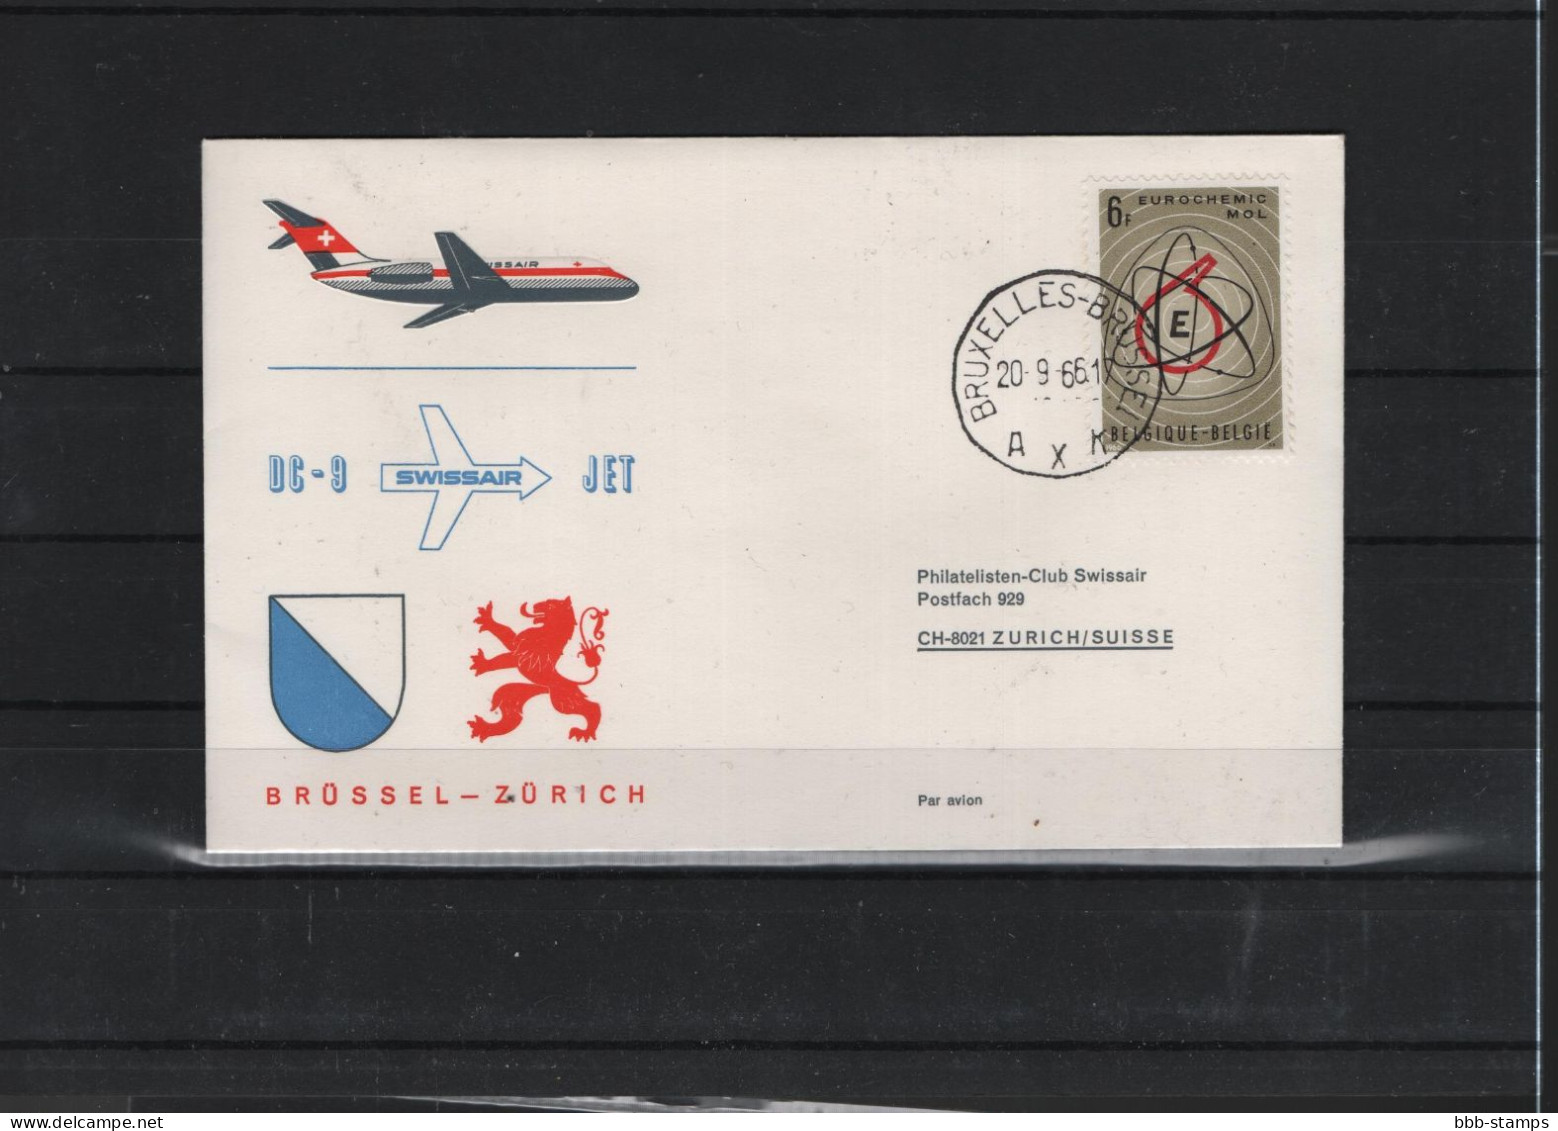 Schweiz Air Mail Swissair  FFC  20.9.2066 Zürich - Brüssel Vv - First Flight Covers